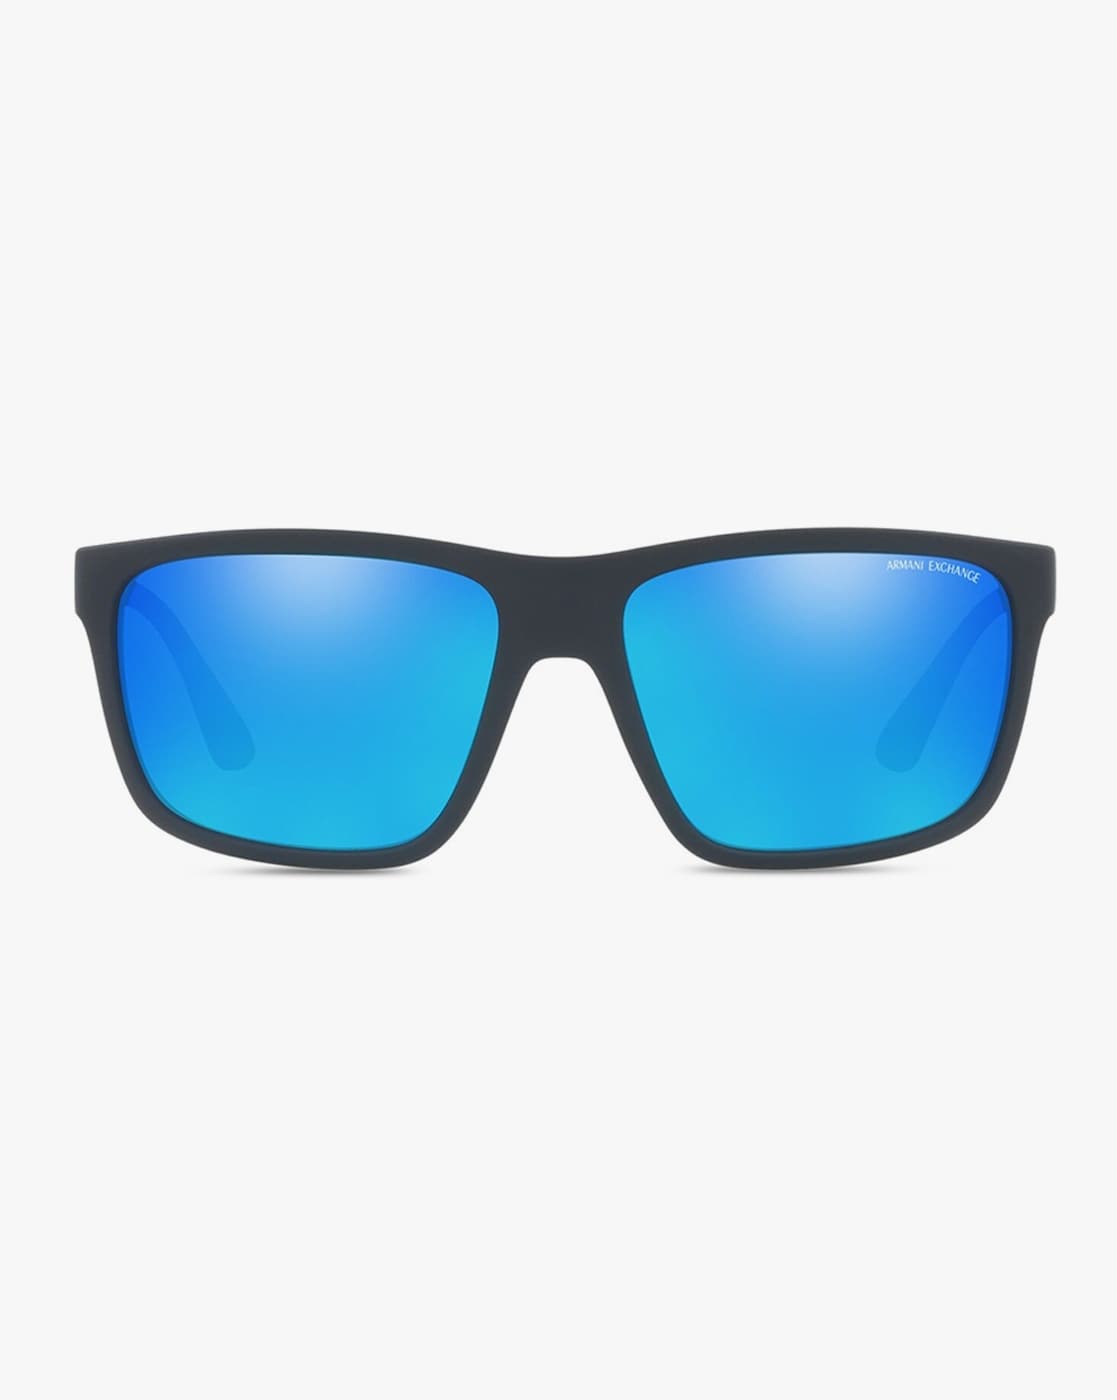 Buy Giorgio Armani Sunglasses & Optical Frames Online | GEM OPTICIANS – GEM  Opticians